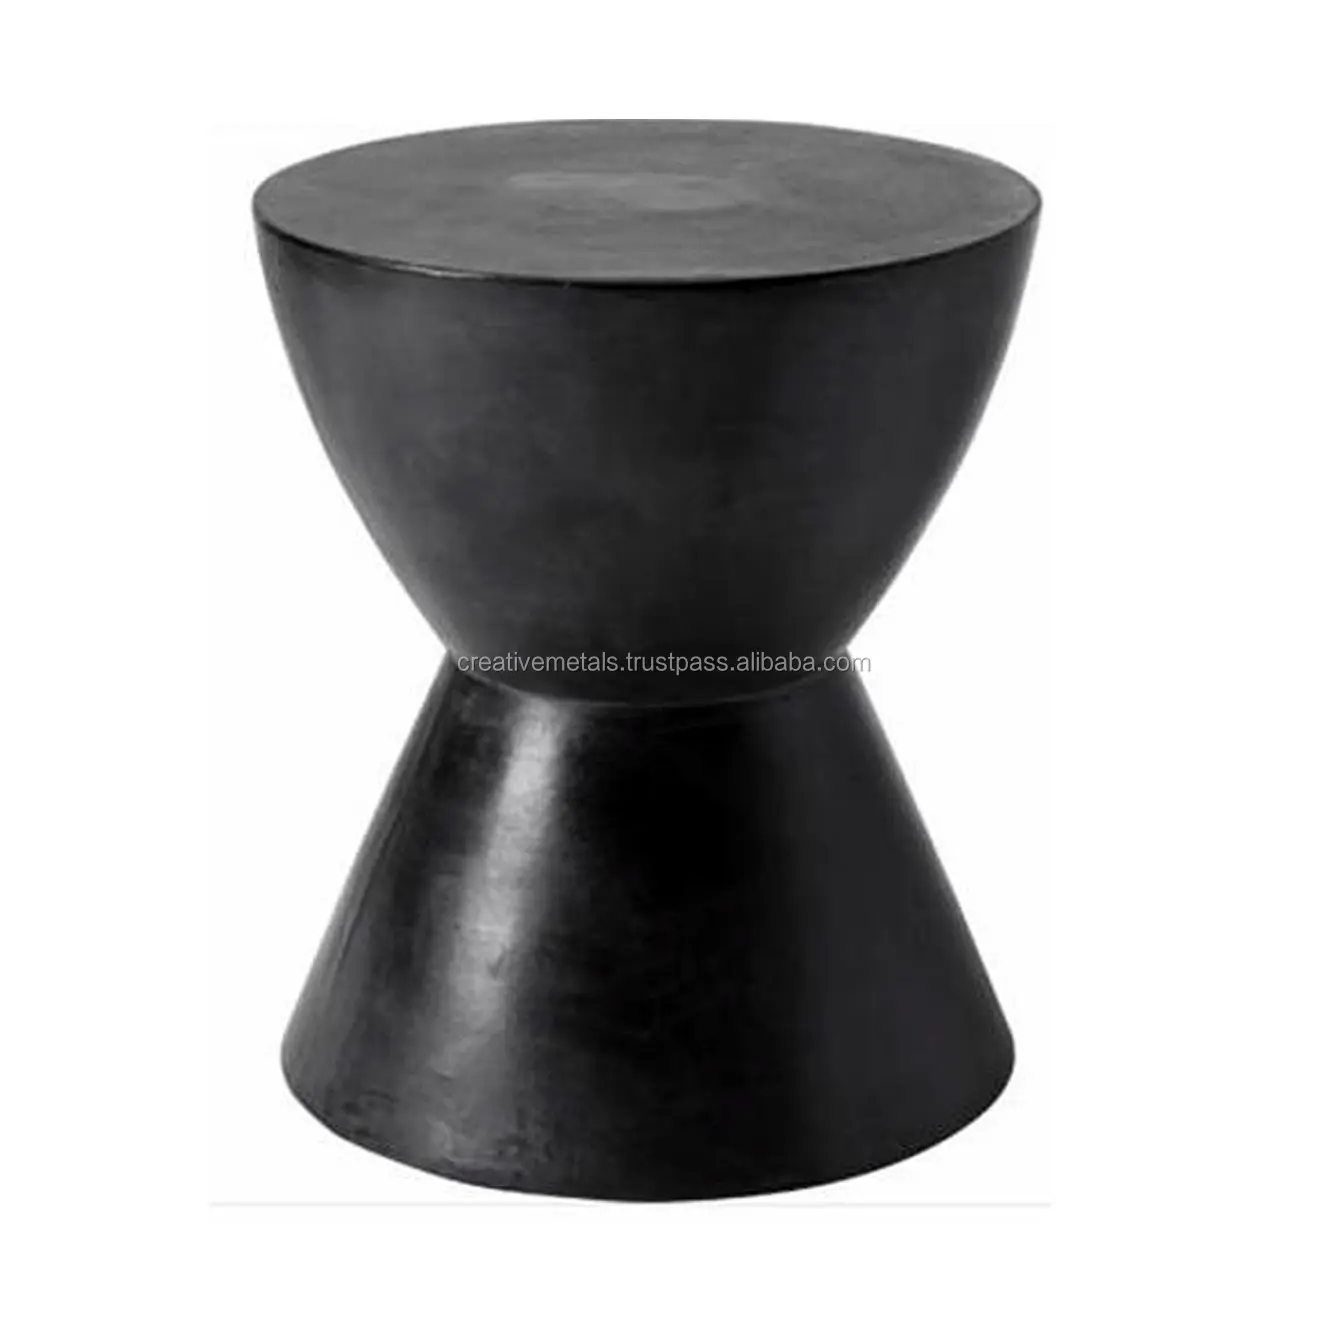 דקורטיבי מתכת שרפרף עם שחור חדש לגמרי מטבח כיסאות בר מודרני מטבח כסאות כיסא מודרני עם באיכות גבוהה